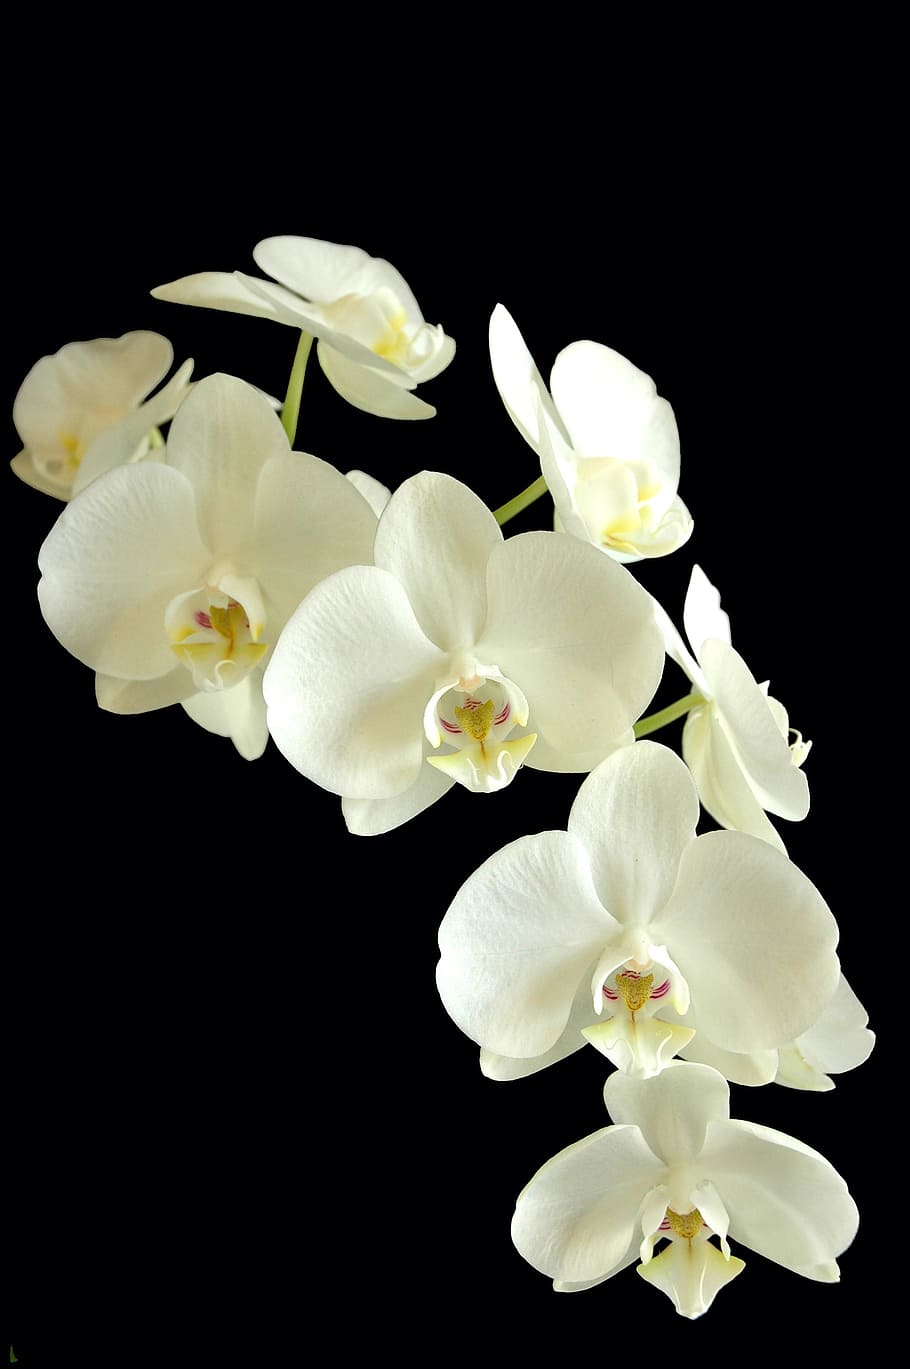 orquídea blanca, phanaelopsis, orquídea, flor, blanco y negro, flora, planta, planta floreciente, belleza en la naturaleza, pétalo